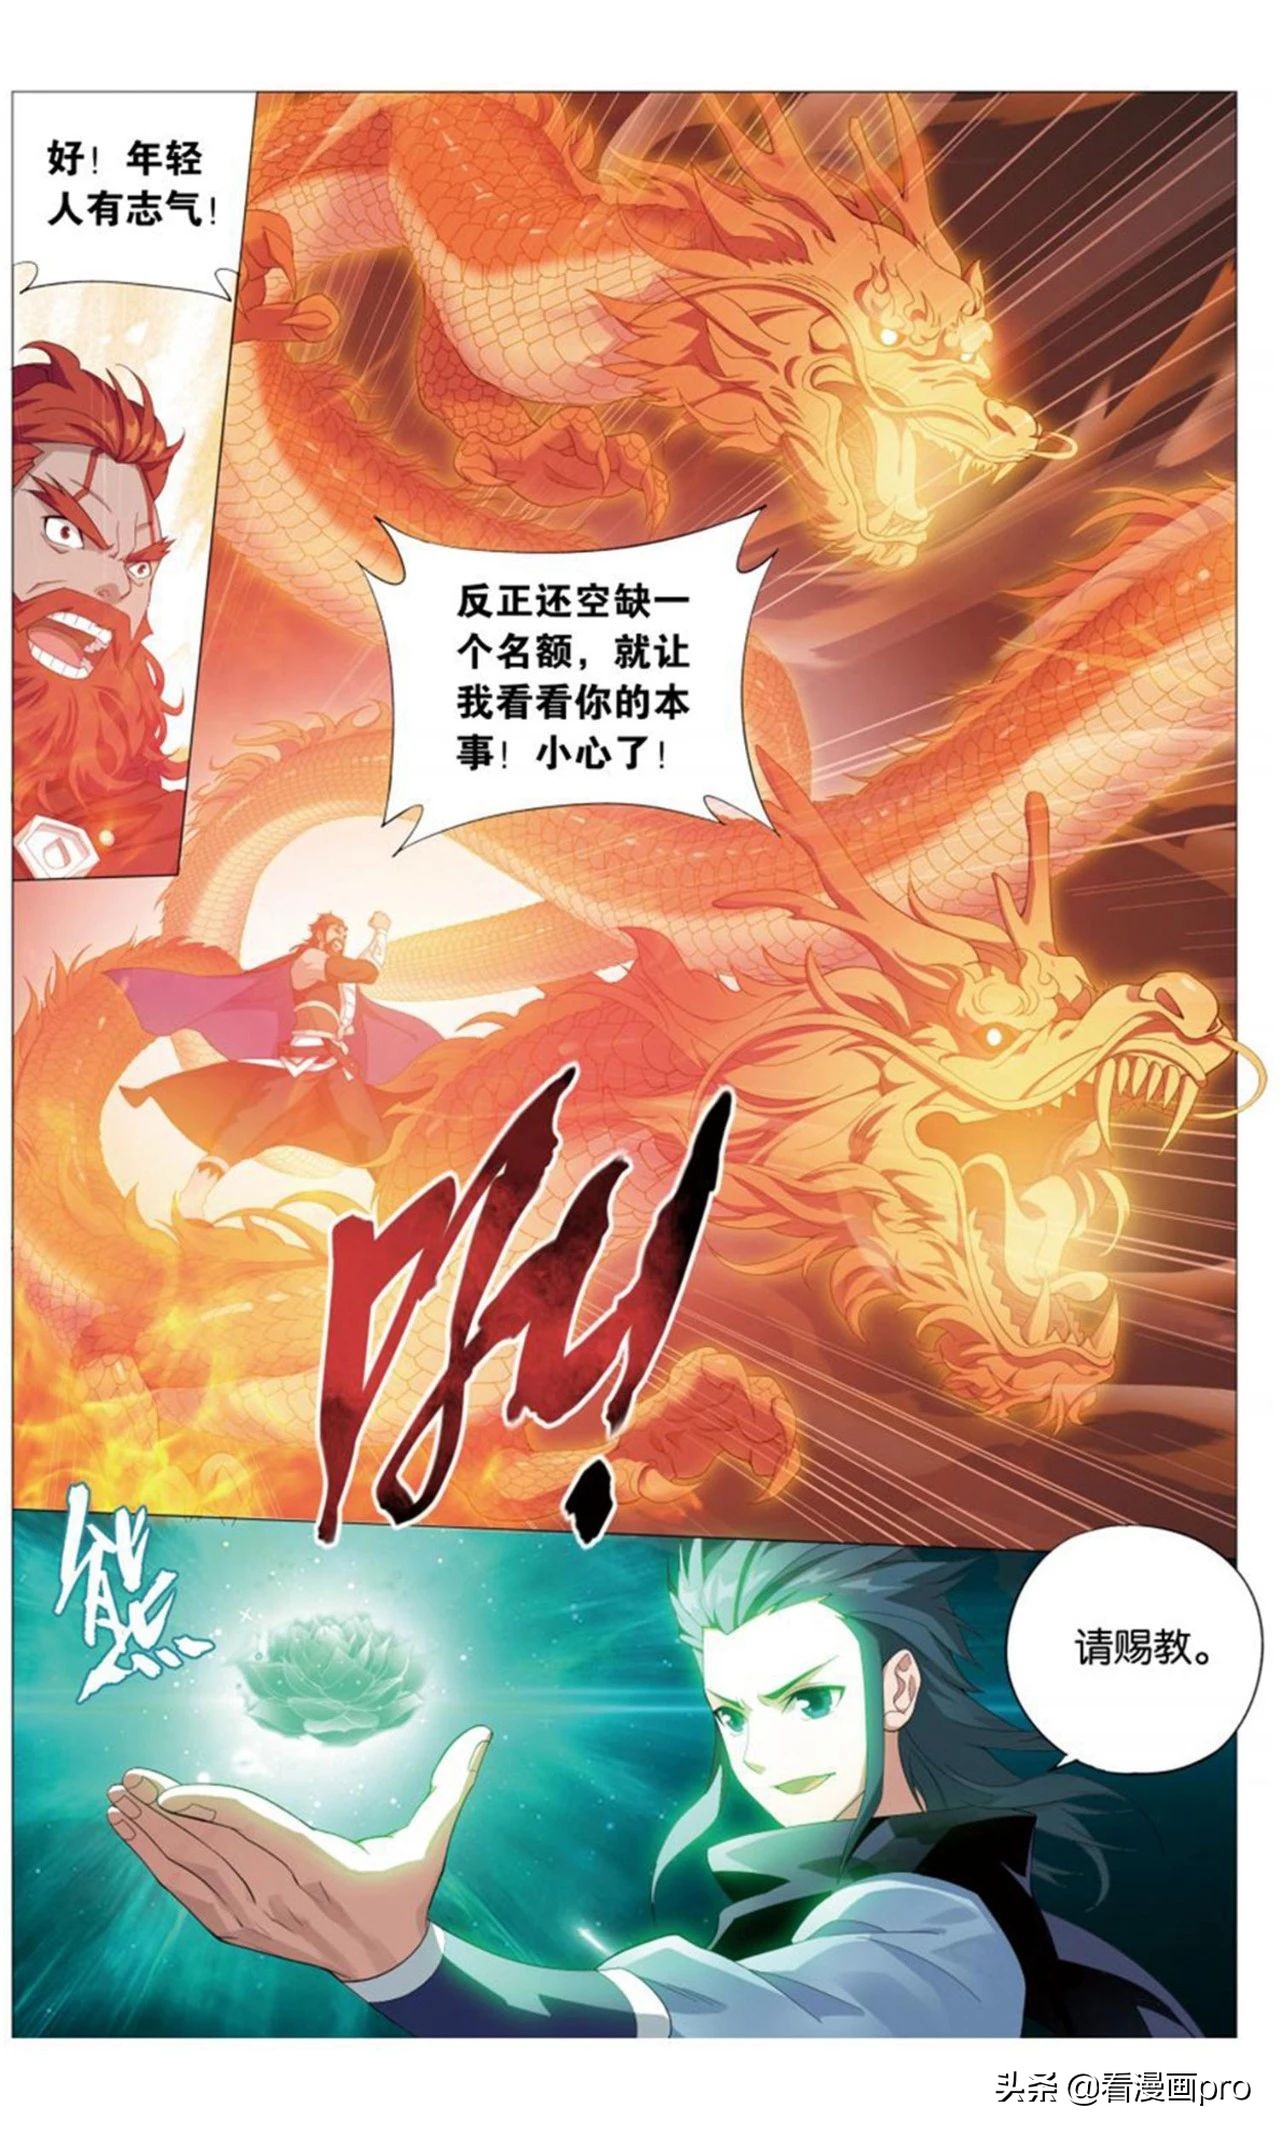 九龙雷罡火的威力！斗破苍穹漫画第730-732话焚炎谷